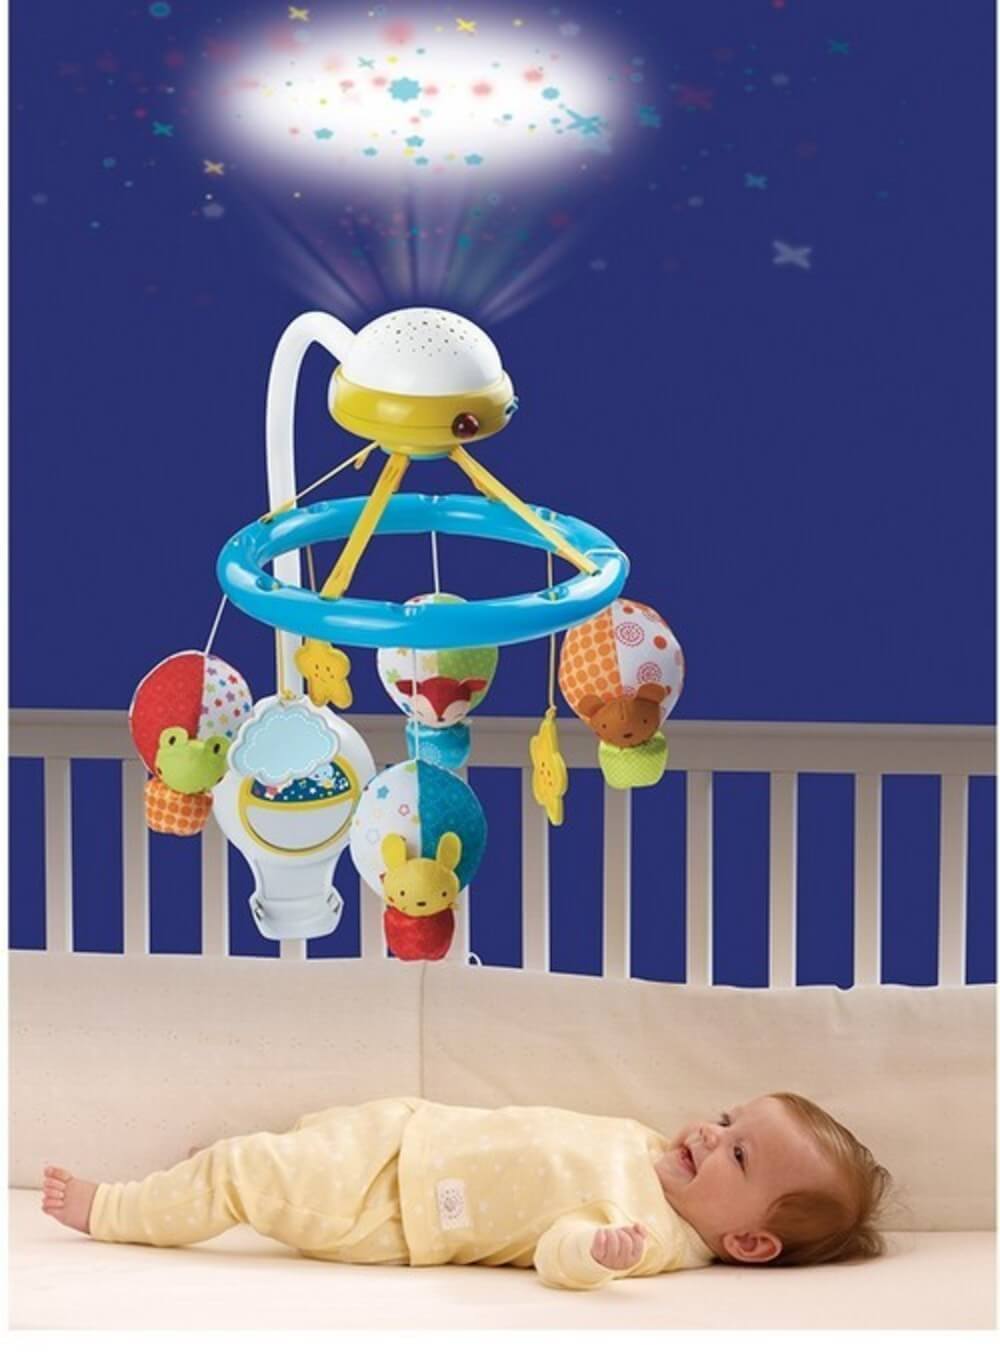 Diversión y descanso para tu bebé con los proyectores y móviles de cuna -  Mega Baby